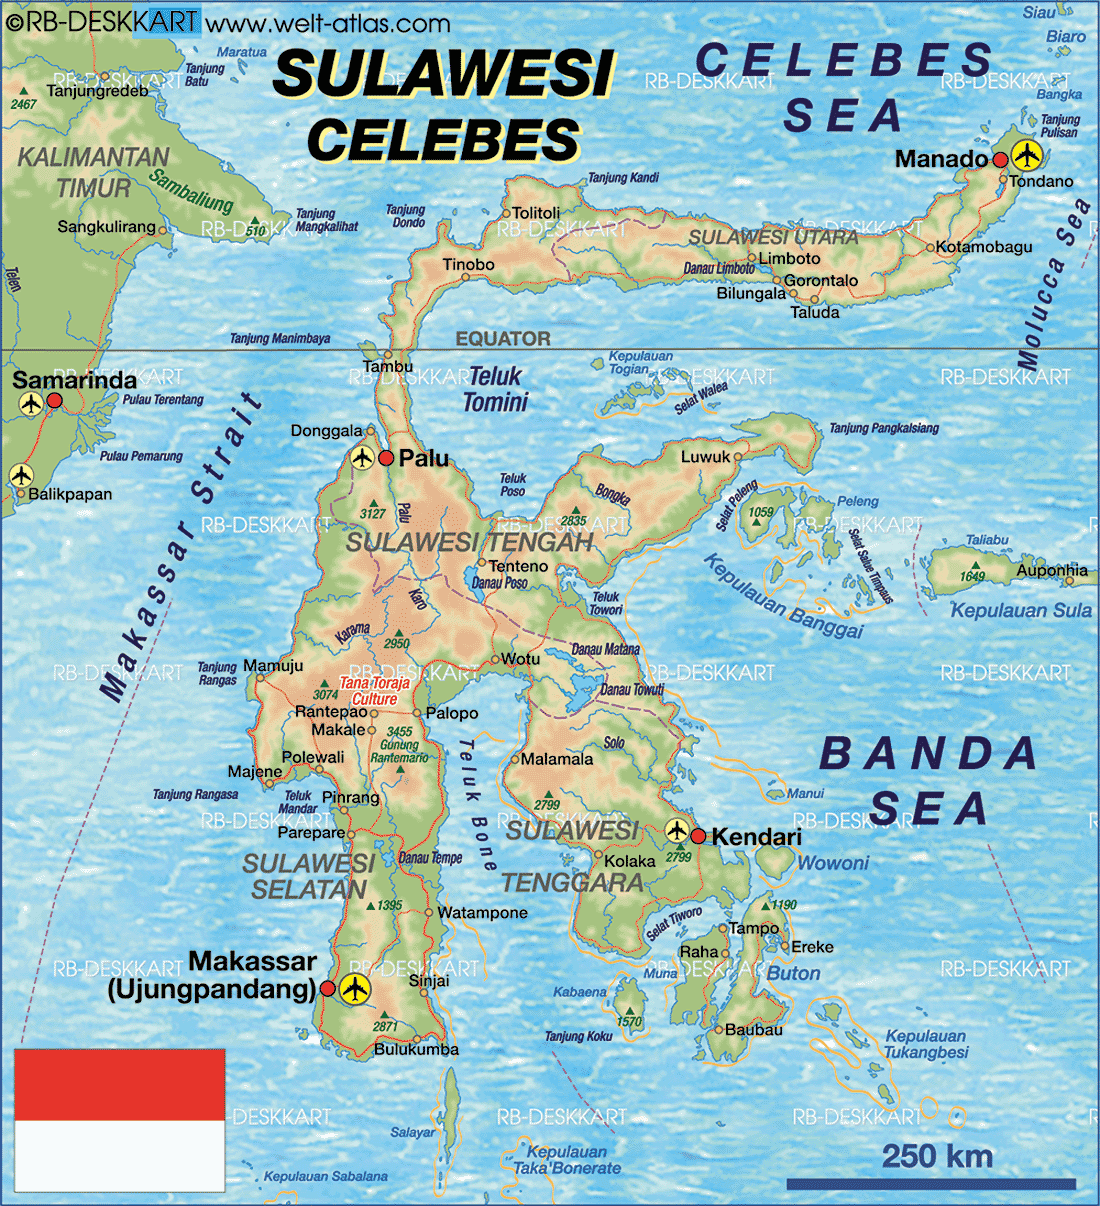 Islas del Mundo: